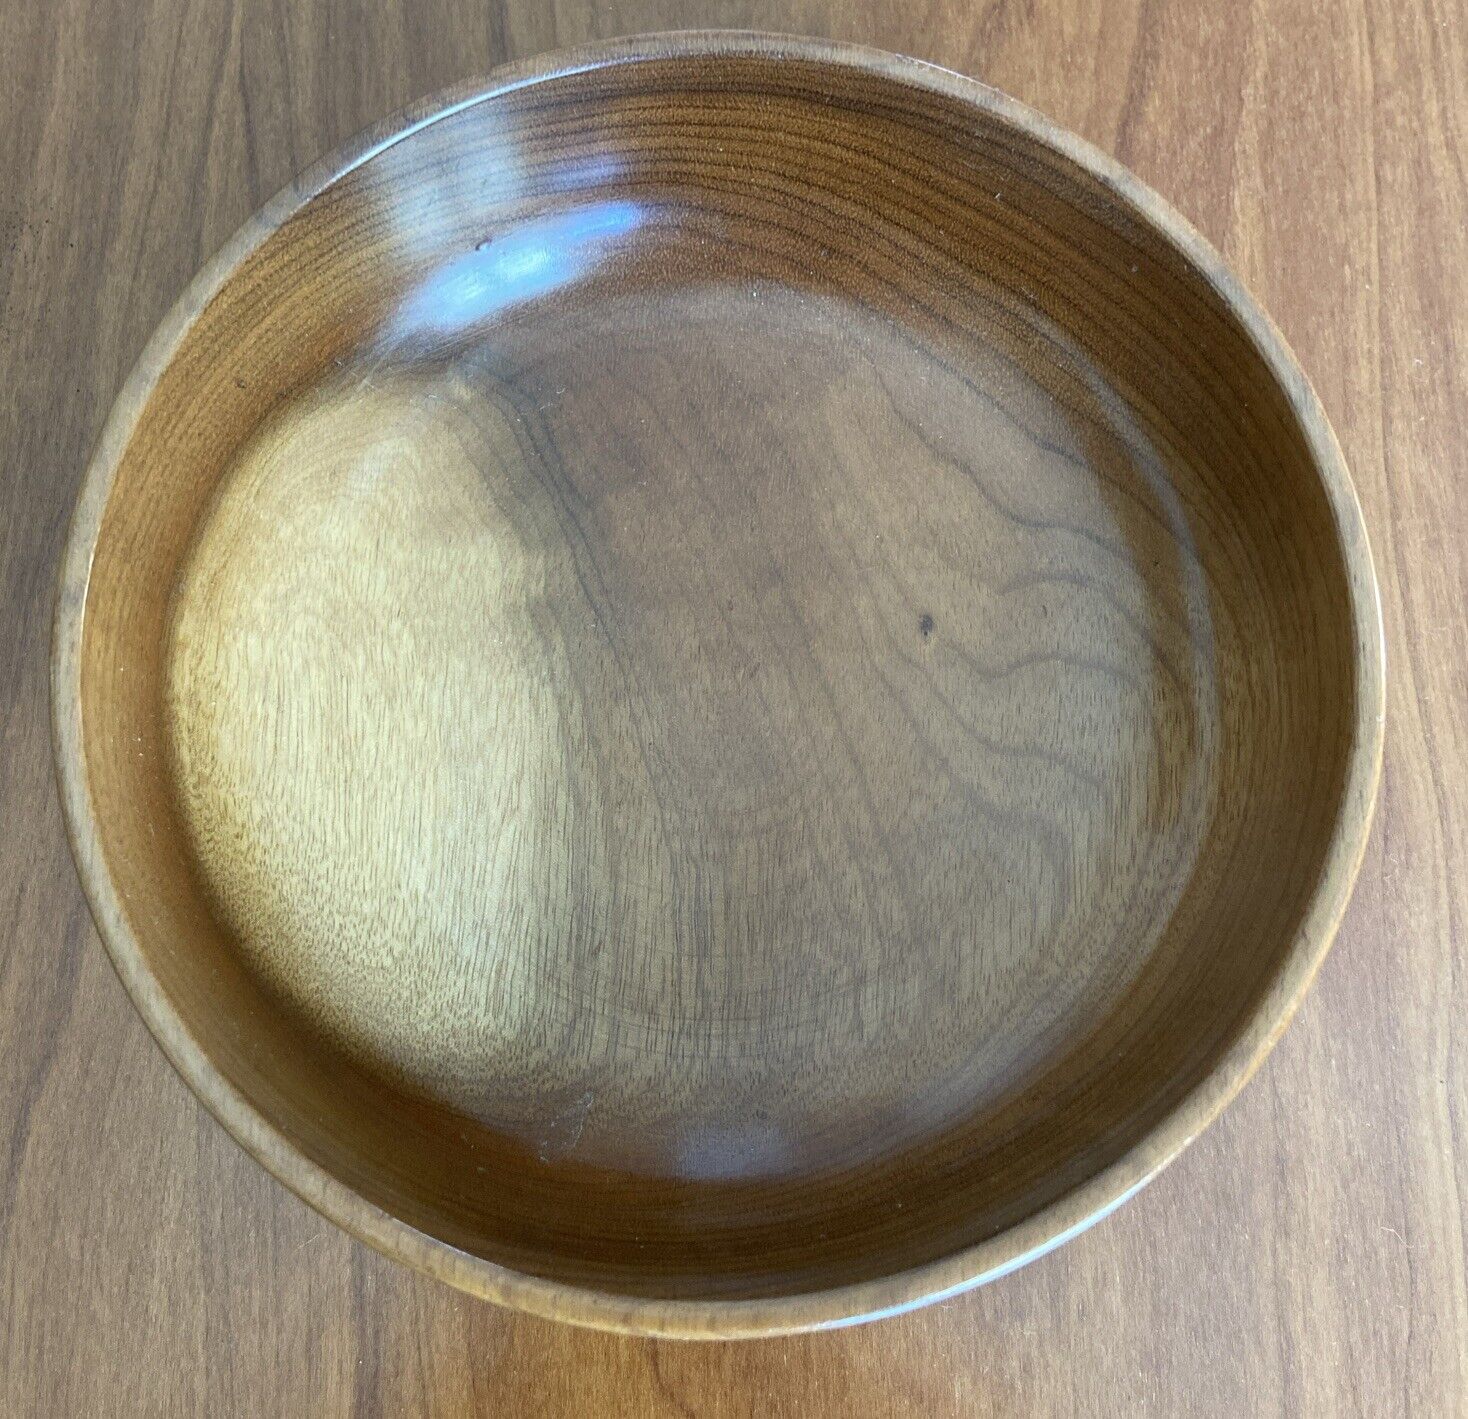 Myrtlewood Lathe Turned Wood  Bowl 6” Diameter 2” H Made in Coos Bay Oregon